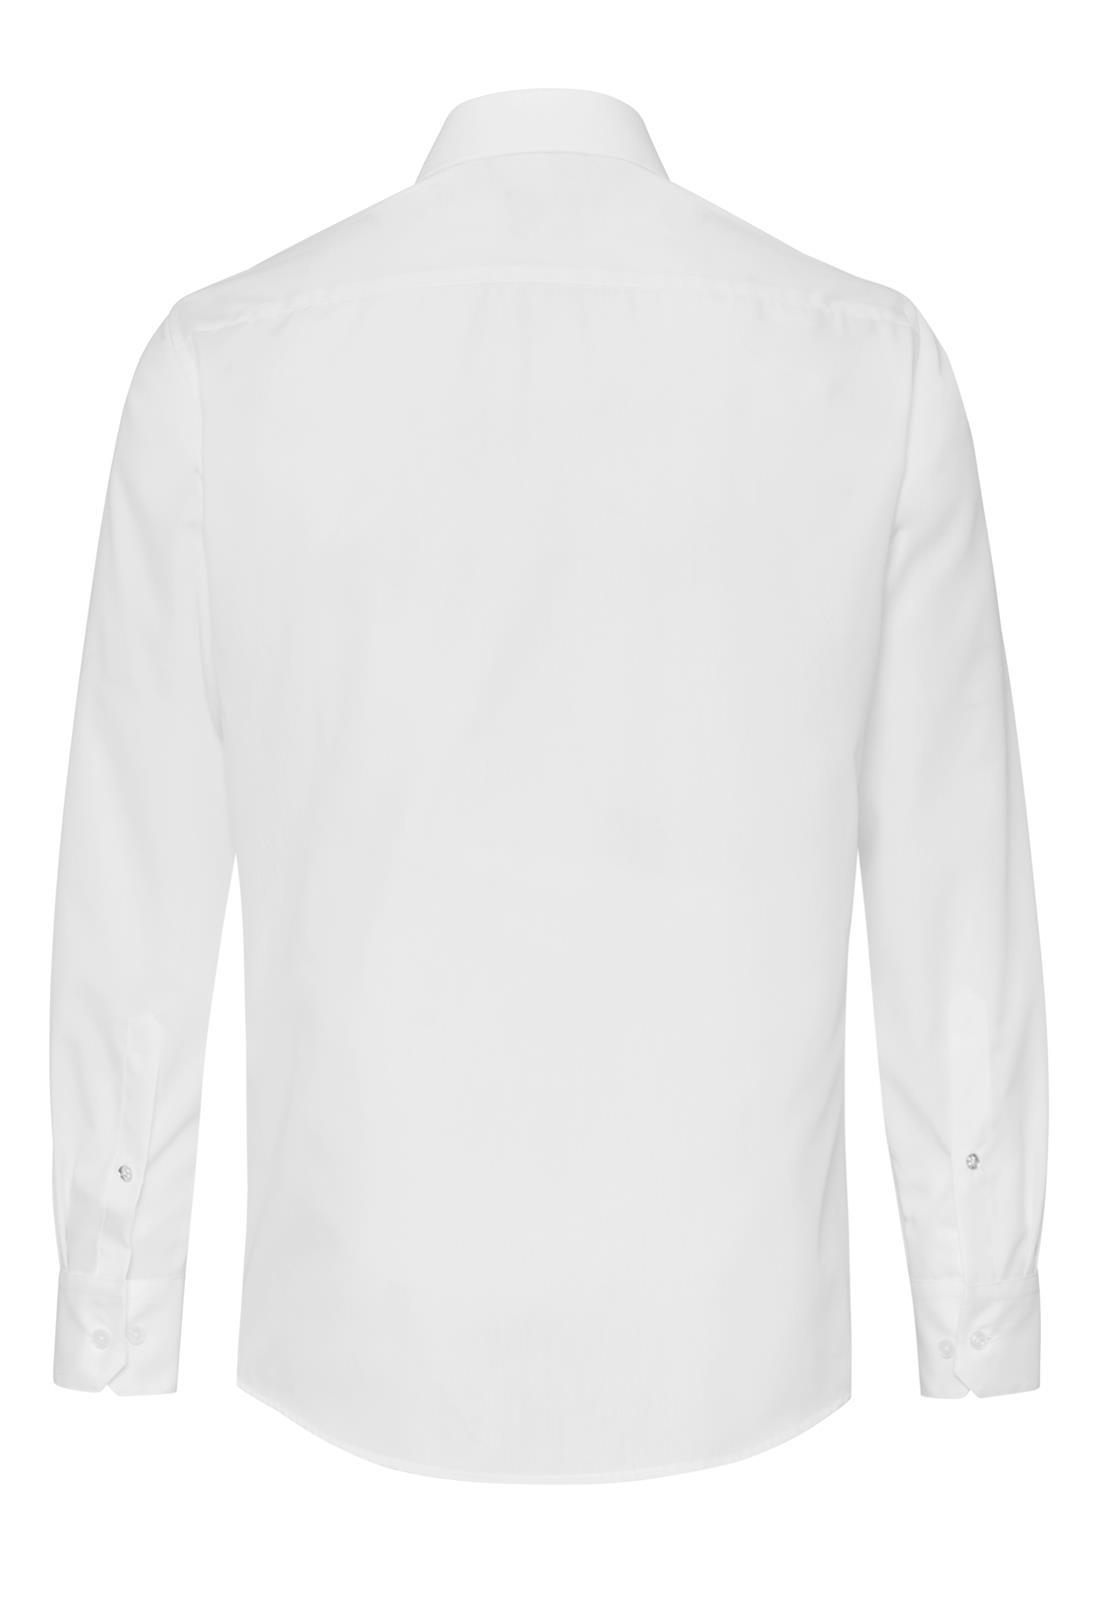 Hatico Essential Hemd regular fit Langarm (Beige)